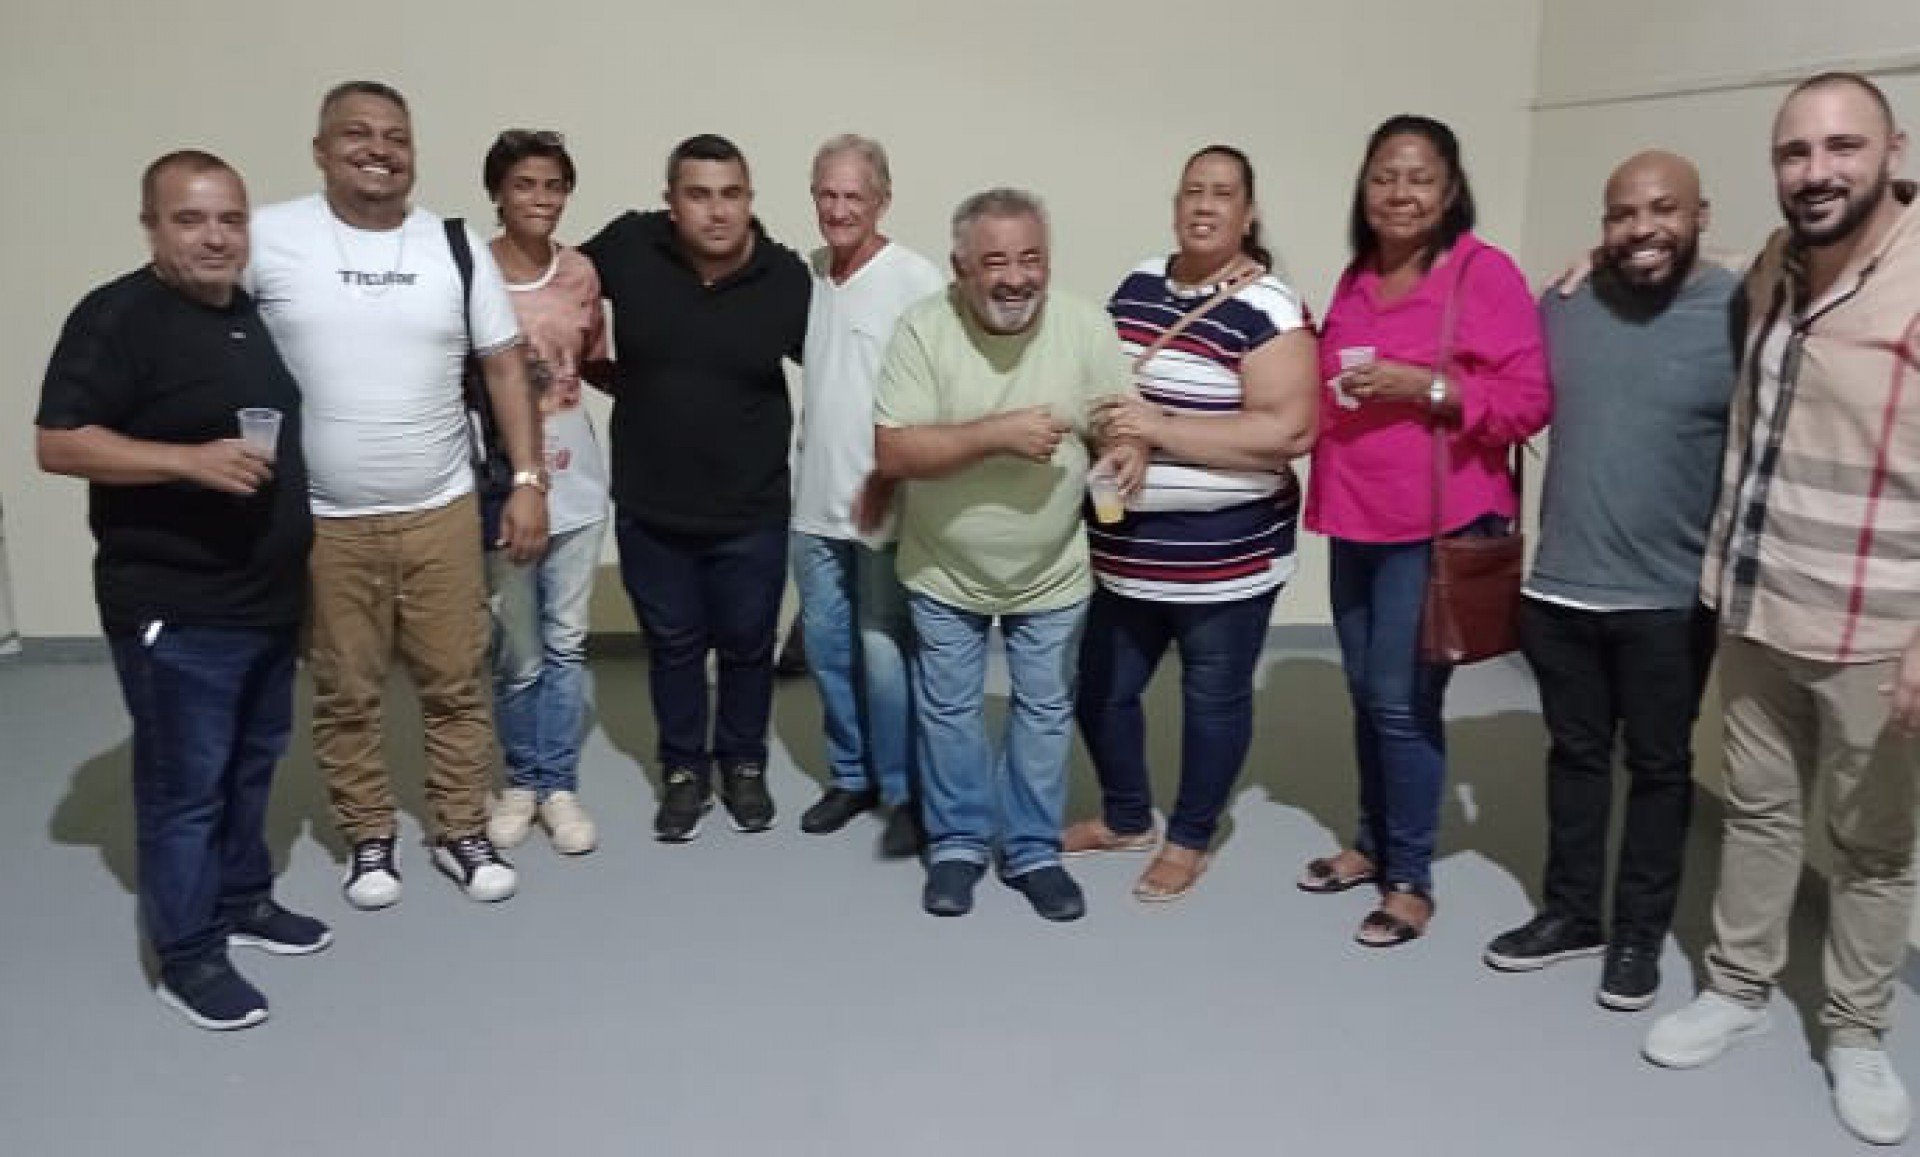 Presidente Reginaldo Gomes (E), vice-presidente Leandro Santoro (D), presidente de Honra Rodrigo Gomes (de camisa preta, entre dois chefes de atelier) - Divulgação